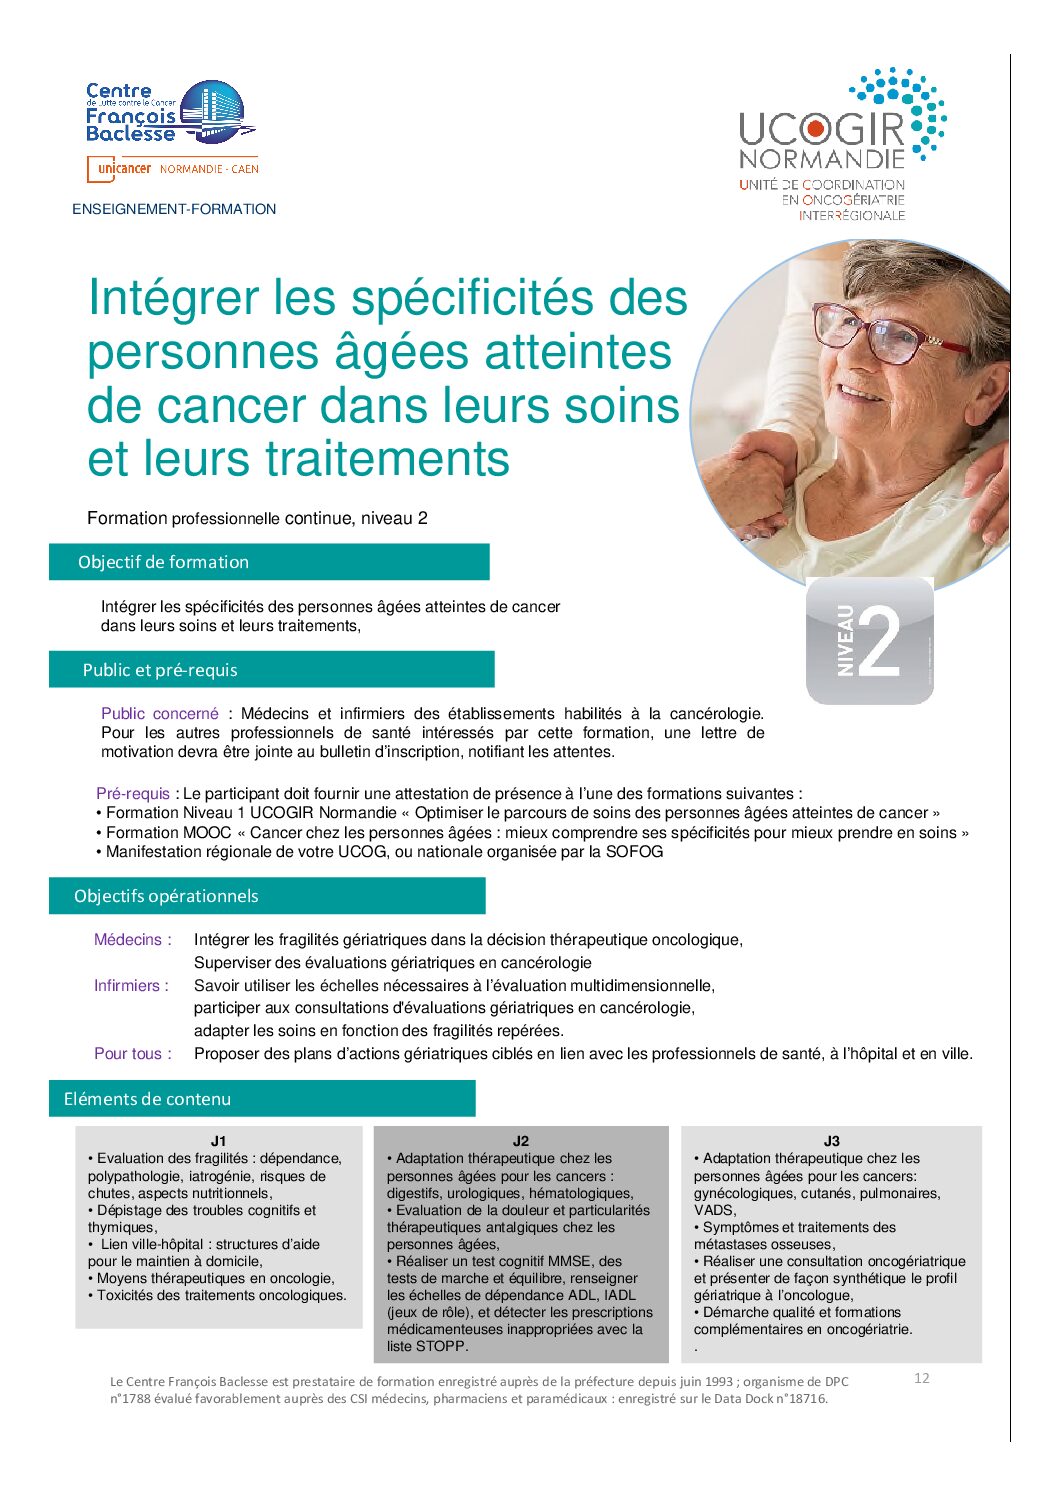 Intégrer les spécificités des personnes âgées atteintes de cancer dans leurs soins et leurs traitements